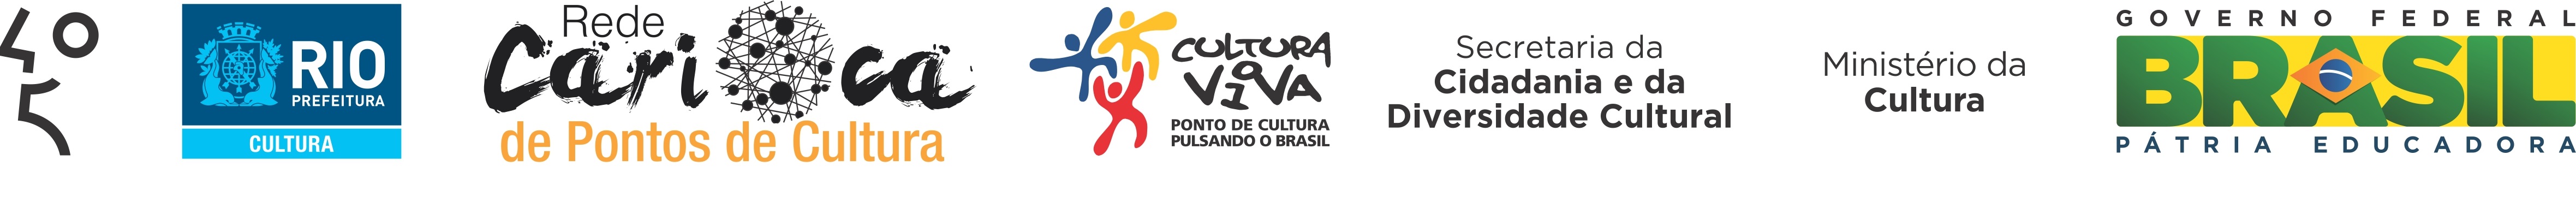 Rgua Rede Carioca de Pontos de Cultura 450 UMA